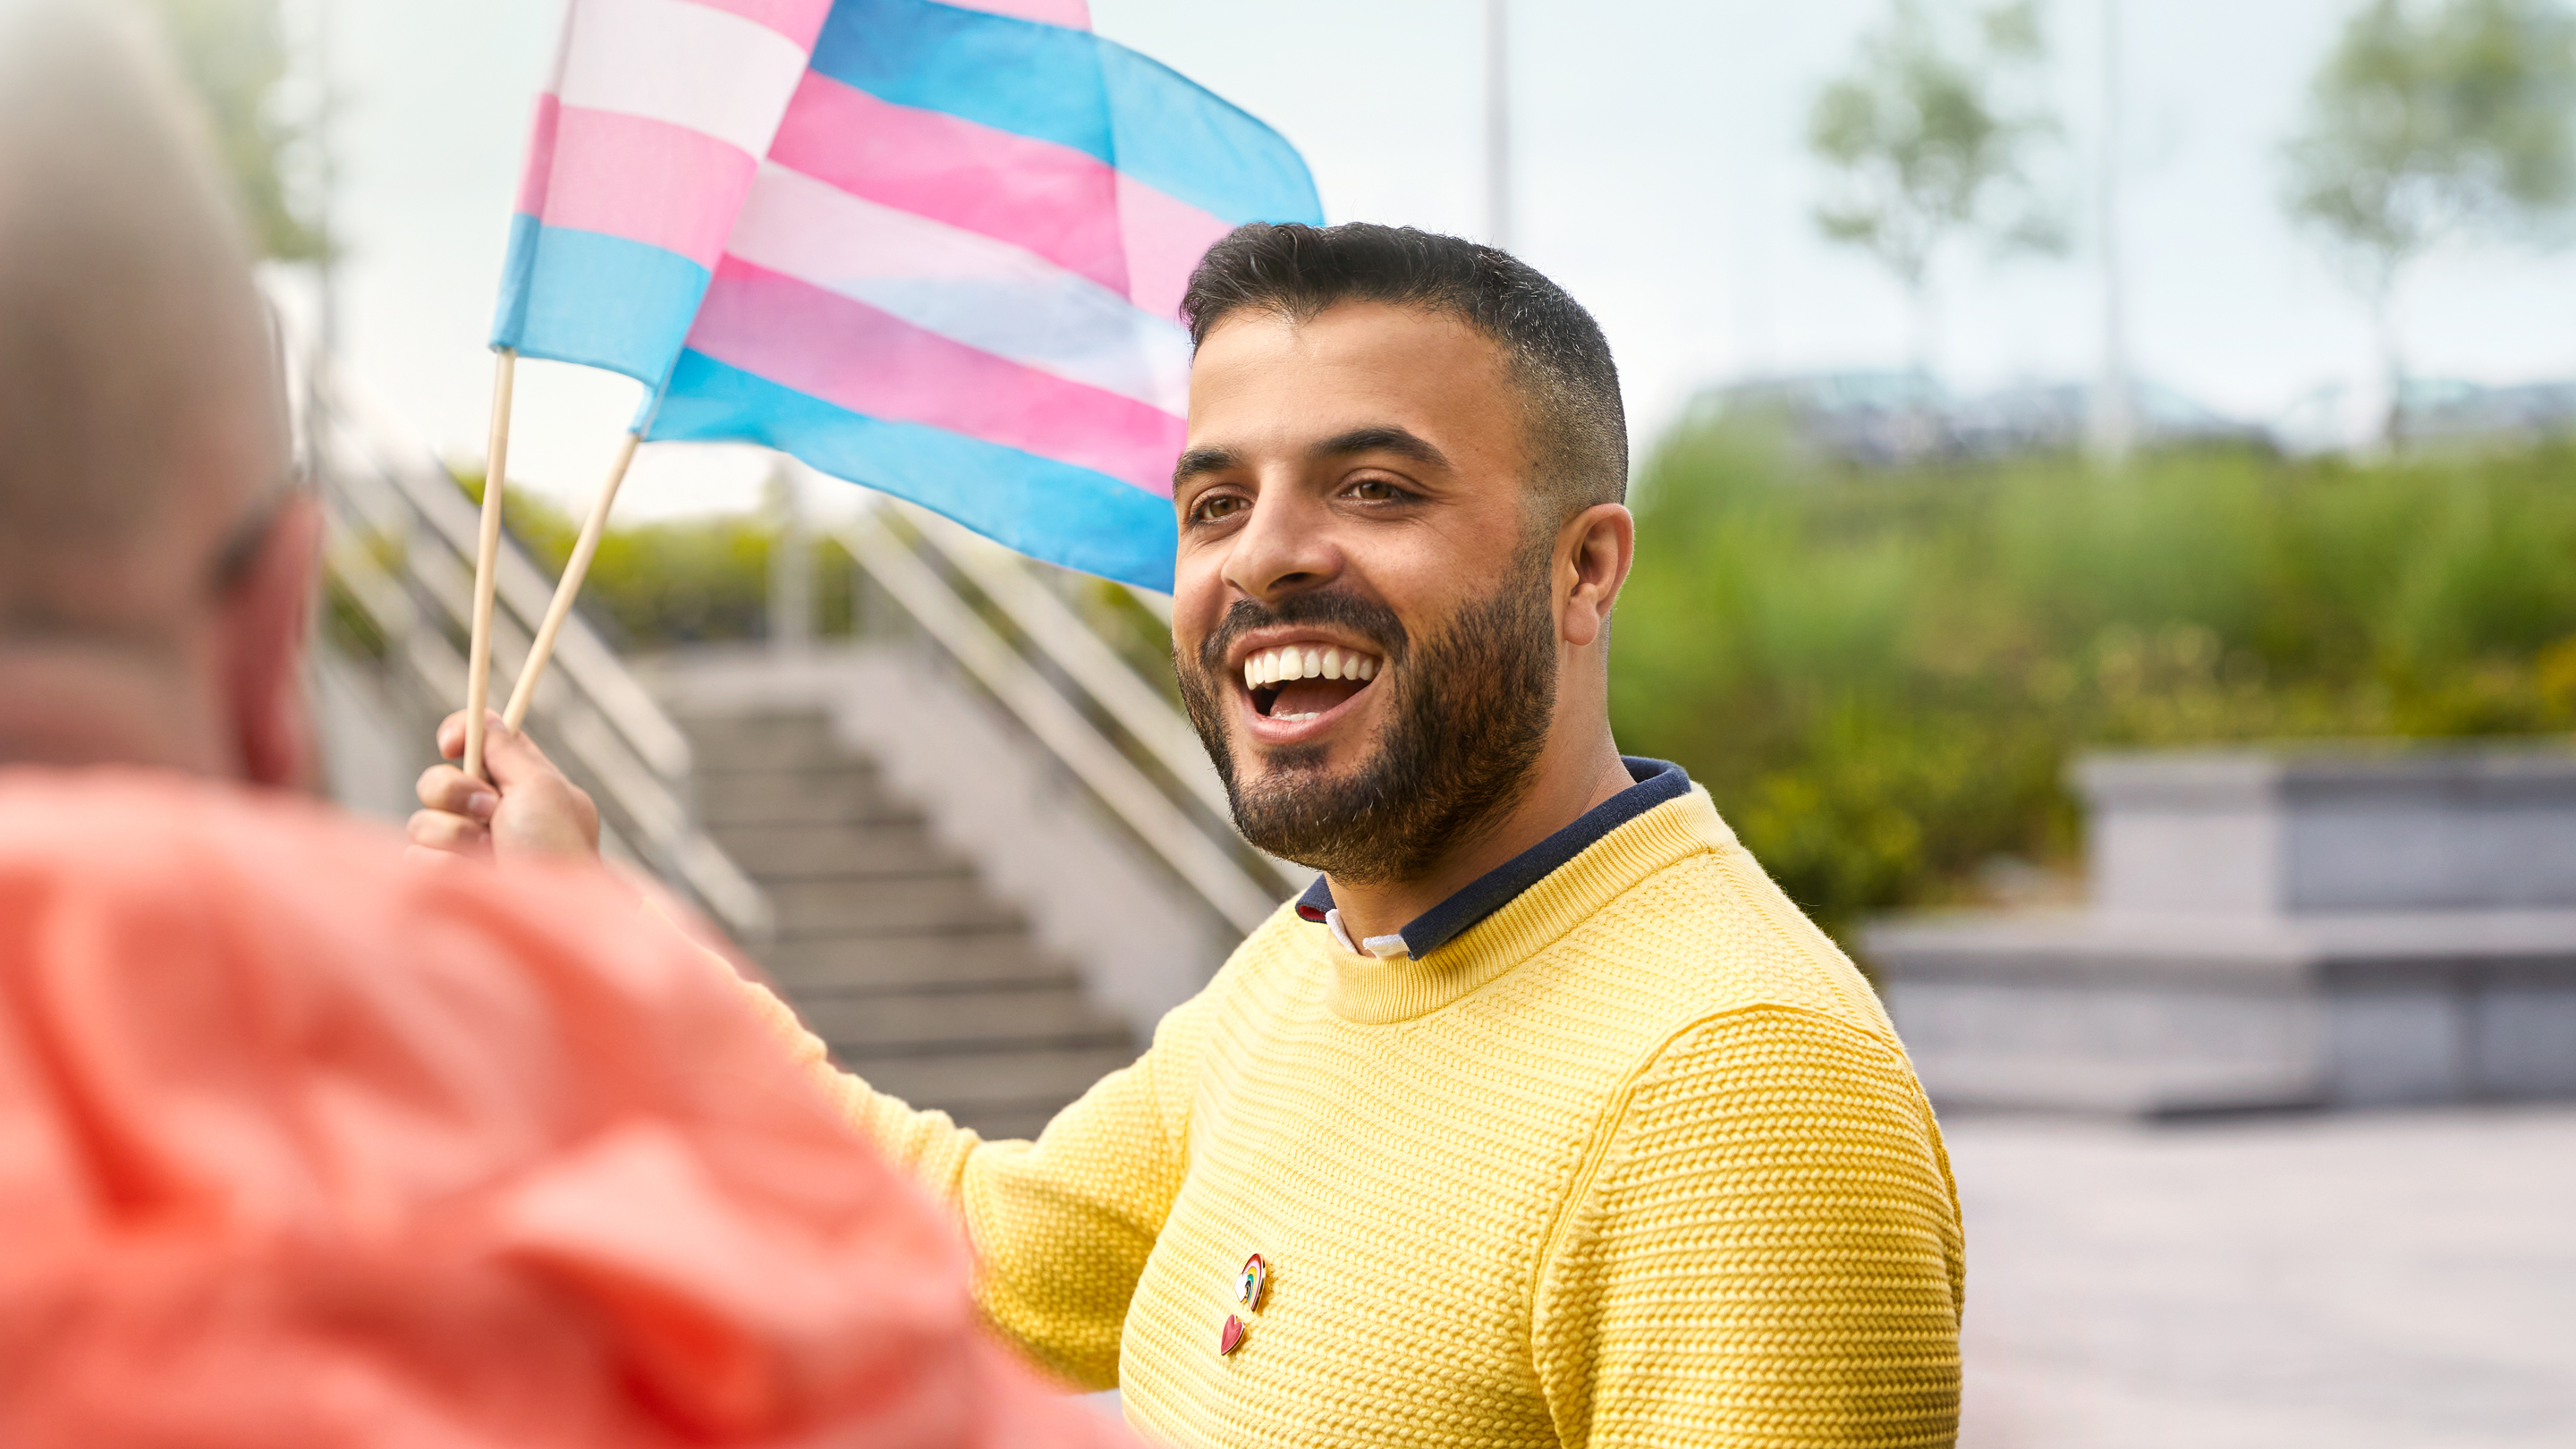 Medarbejder hos Apple i Cork, der vifter med et flag for fællesskabet for transkønnede.